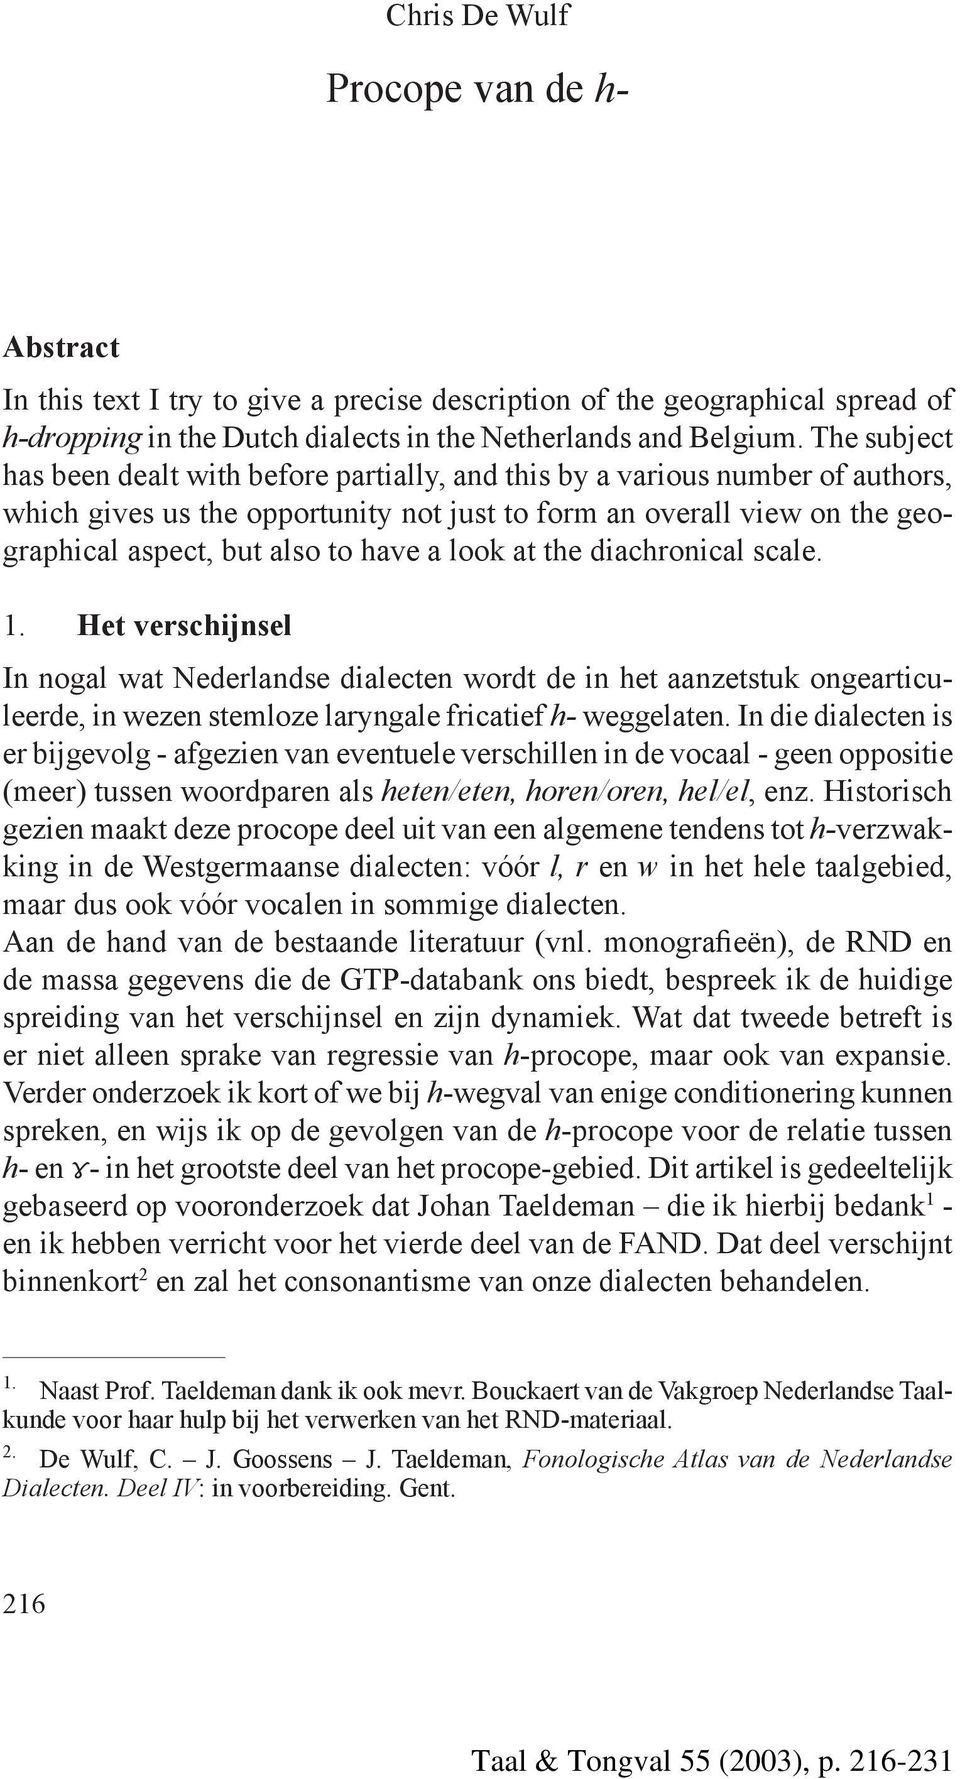 a look at the diachronical scale. 1. Het verschijnsel In nogal wat Nederlandse dialecten wordt de in het aanzetstuk ongearticuleerde, in wezen stemloze laryngale fricatief h- weggelaten.